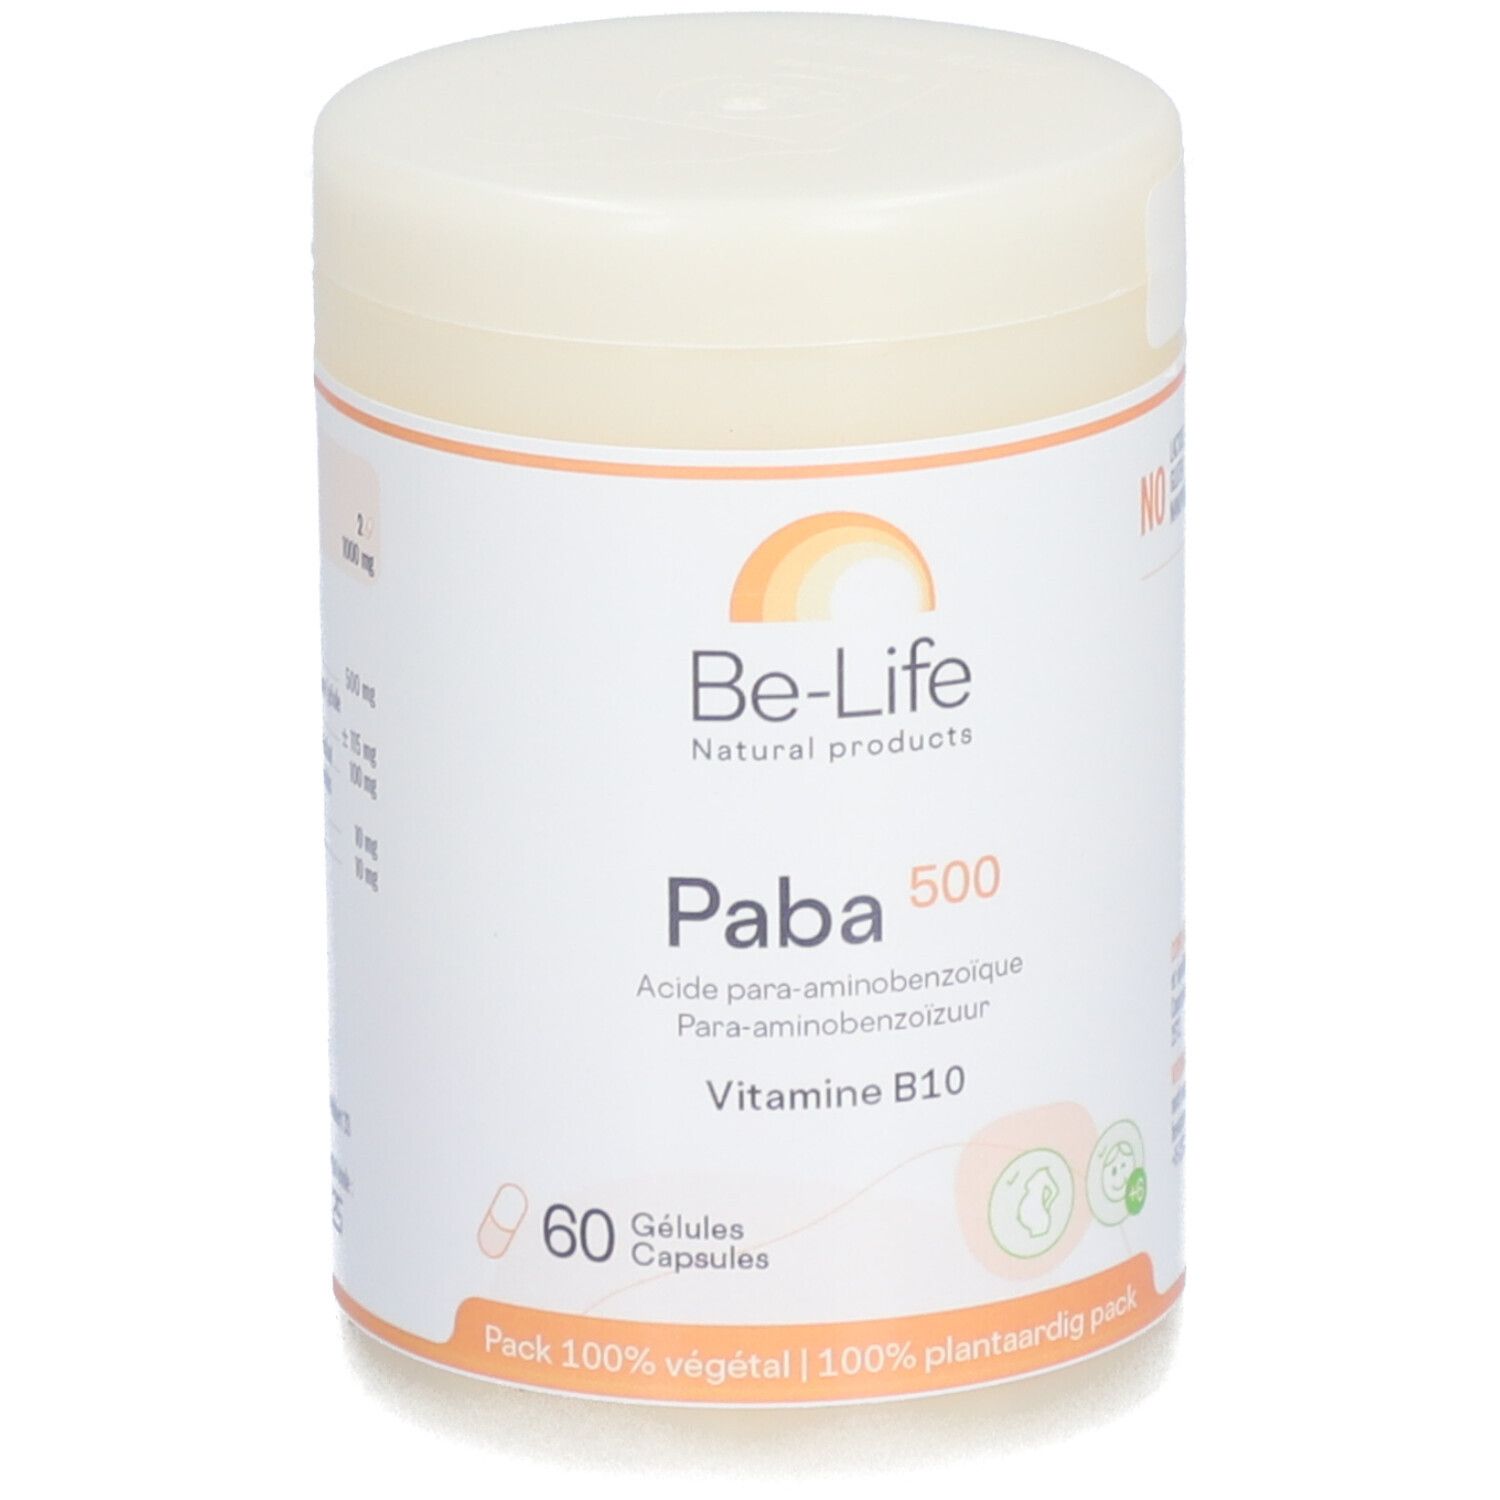 Be-Life Paba 500